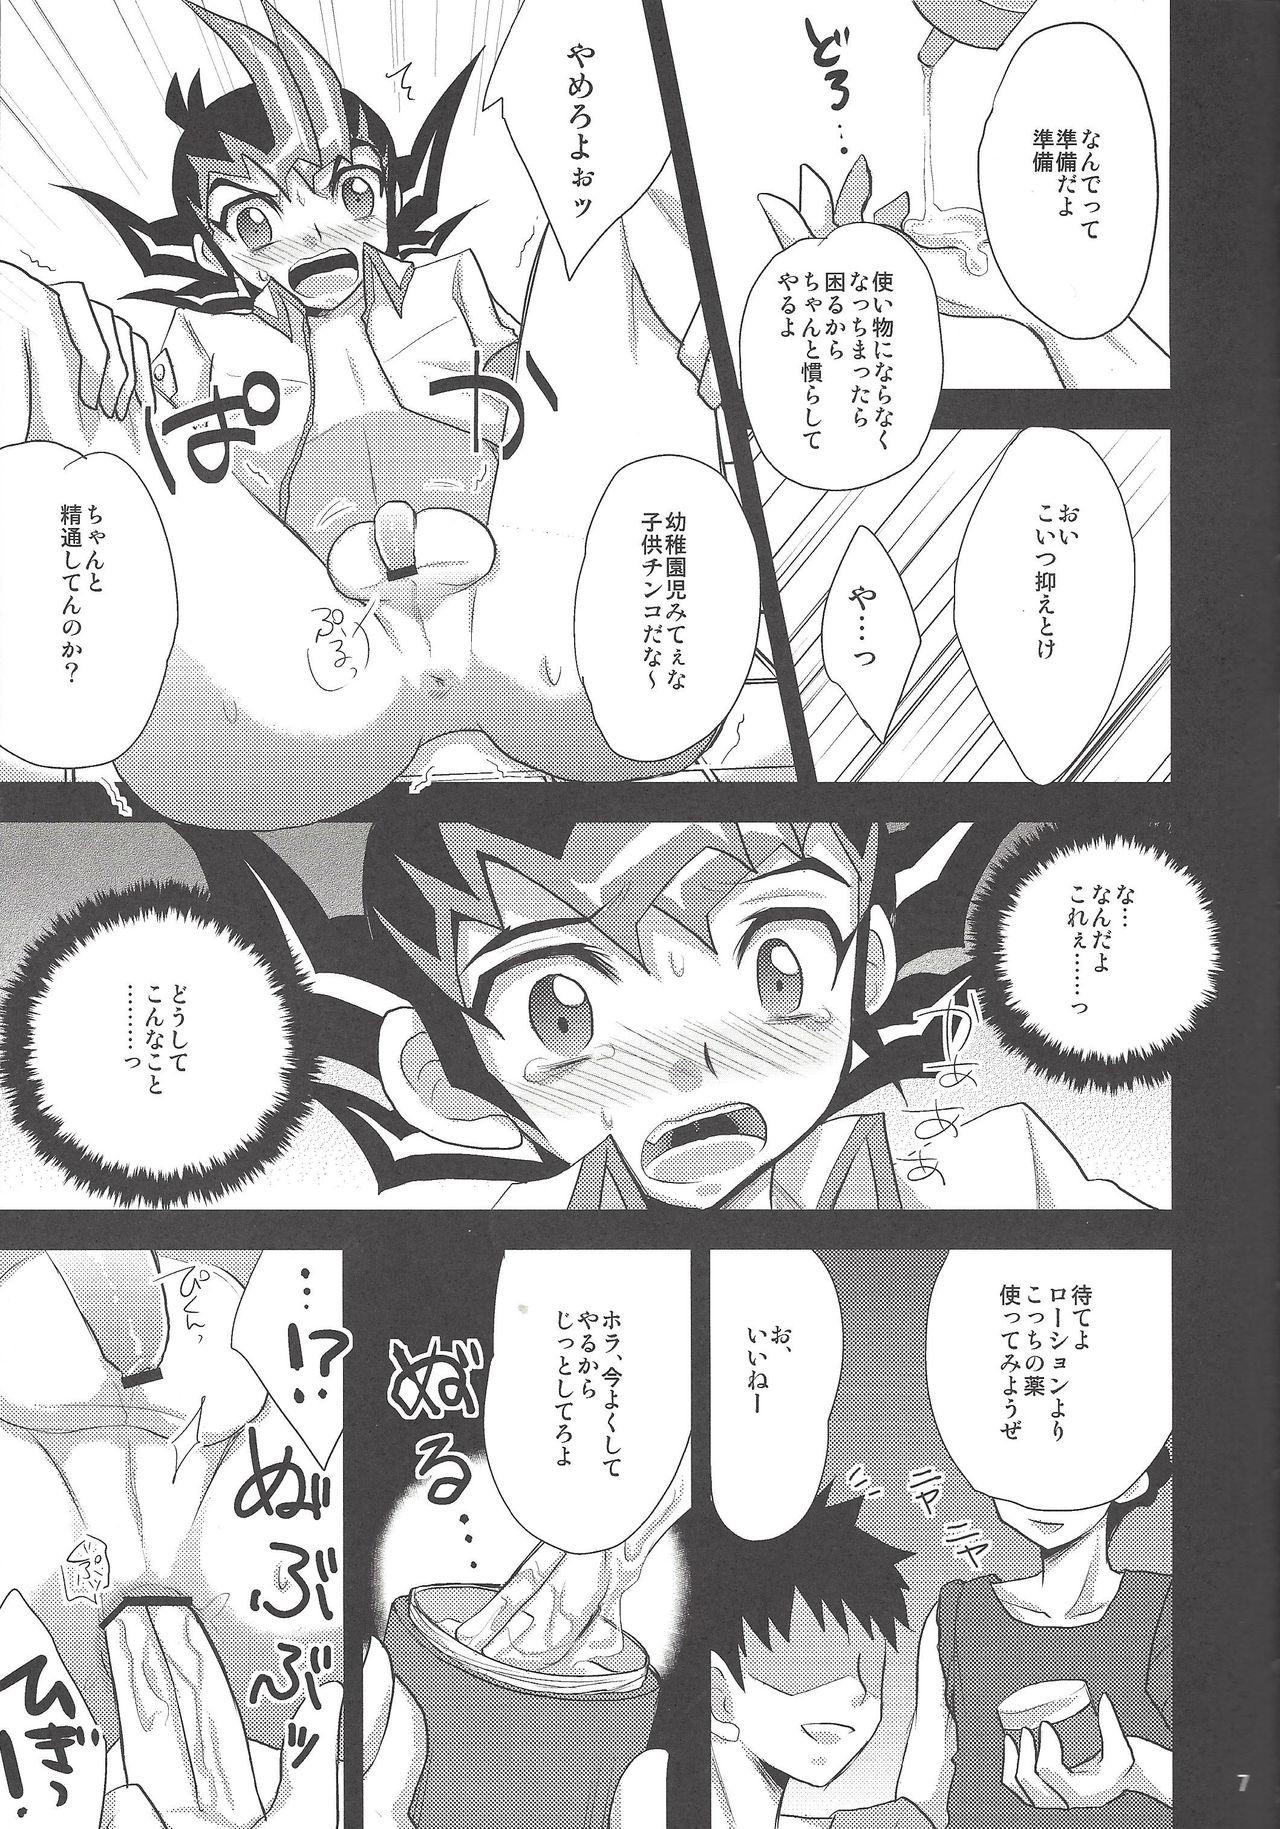 3some Tsukumo Yūma no hajimete kyōshitsu - Yu-gi-oh zexal Amigo - Page 6